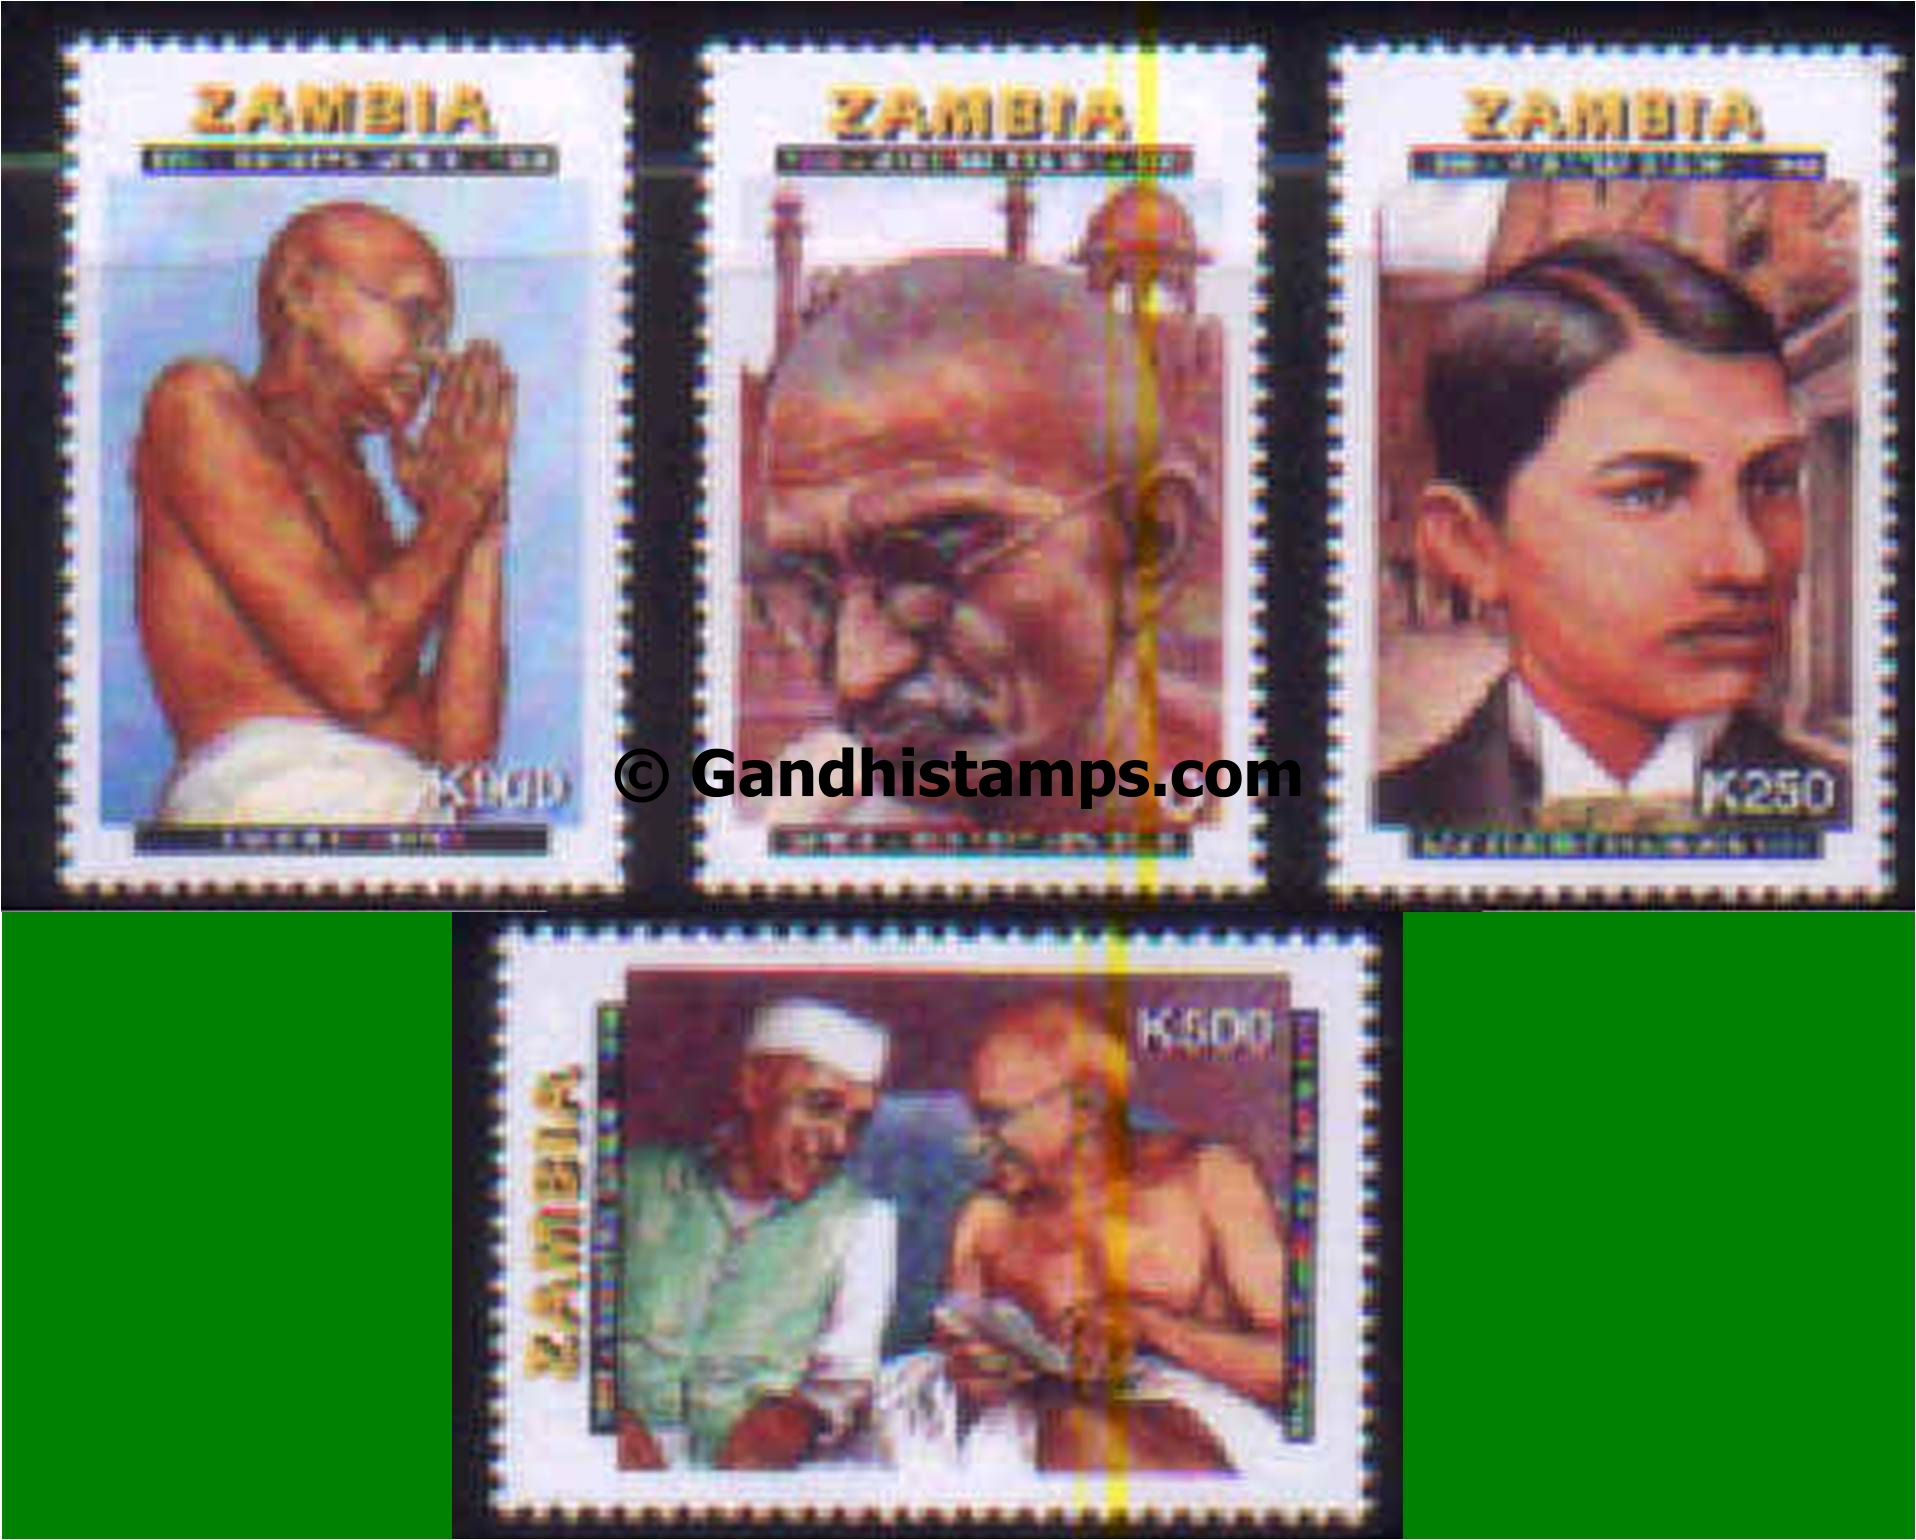 Zambia gandhi stamp